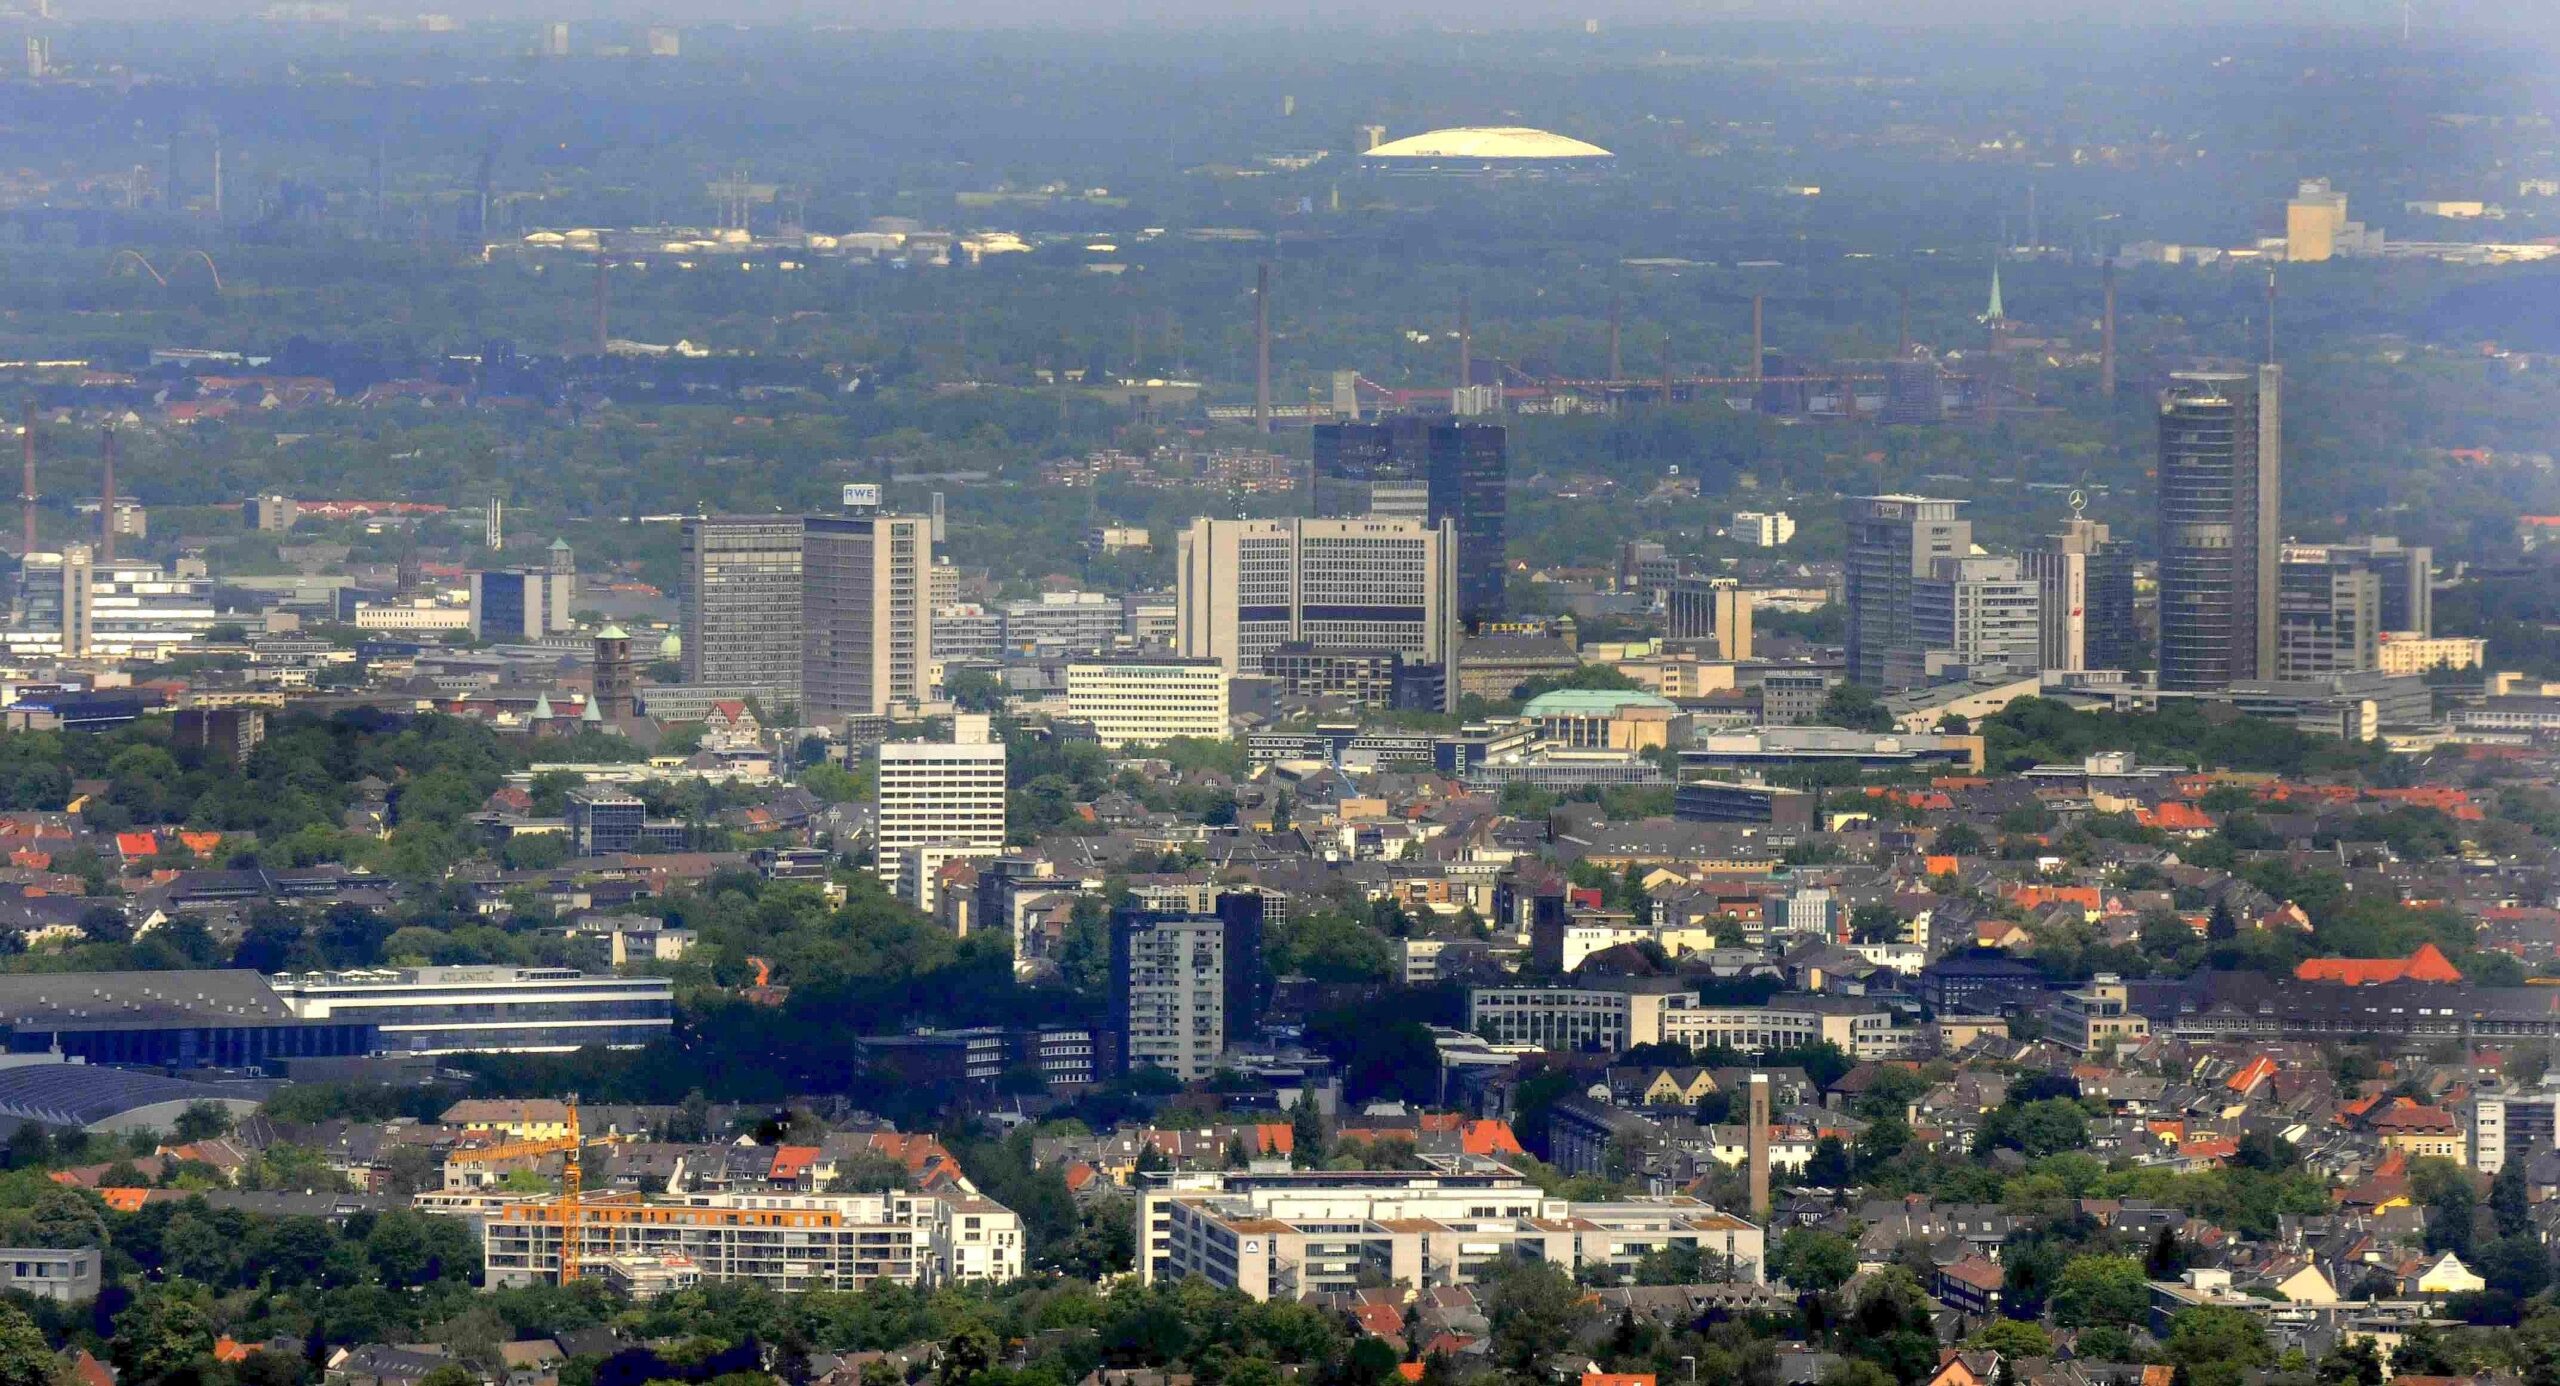 Luftschiffflug über den Mülheimer und Essener Süden. Essener Skyline. Foto: Roy Glisson / WazFotoPool 01.06.2011